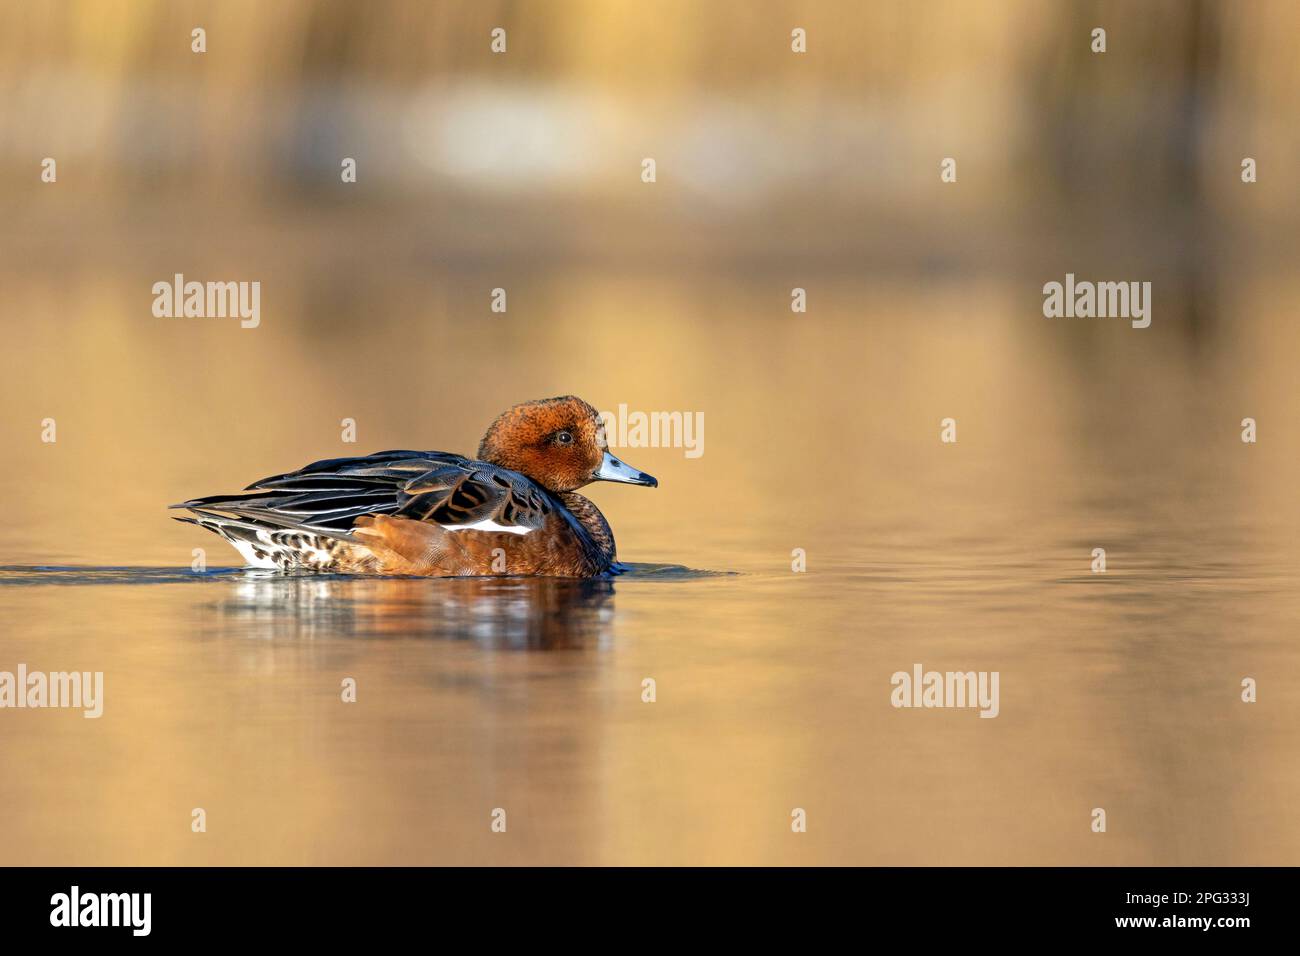 Wigeon eurasien (Anas penelope). Drake dans un plumage non-reproduction nageant sur une rivière. Allemagne Banque D'Images